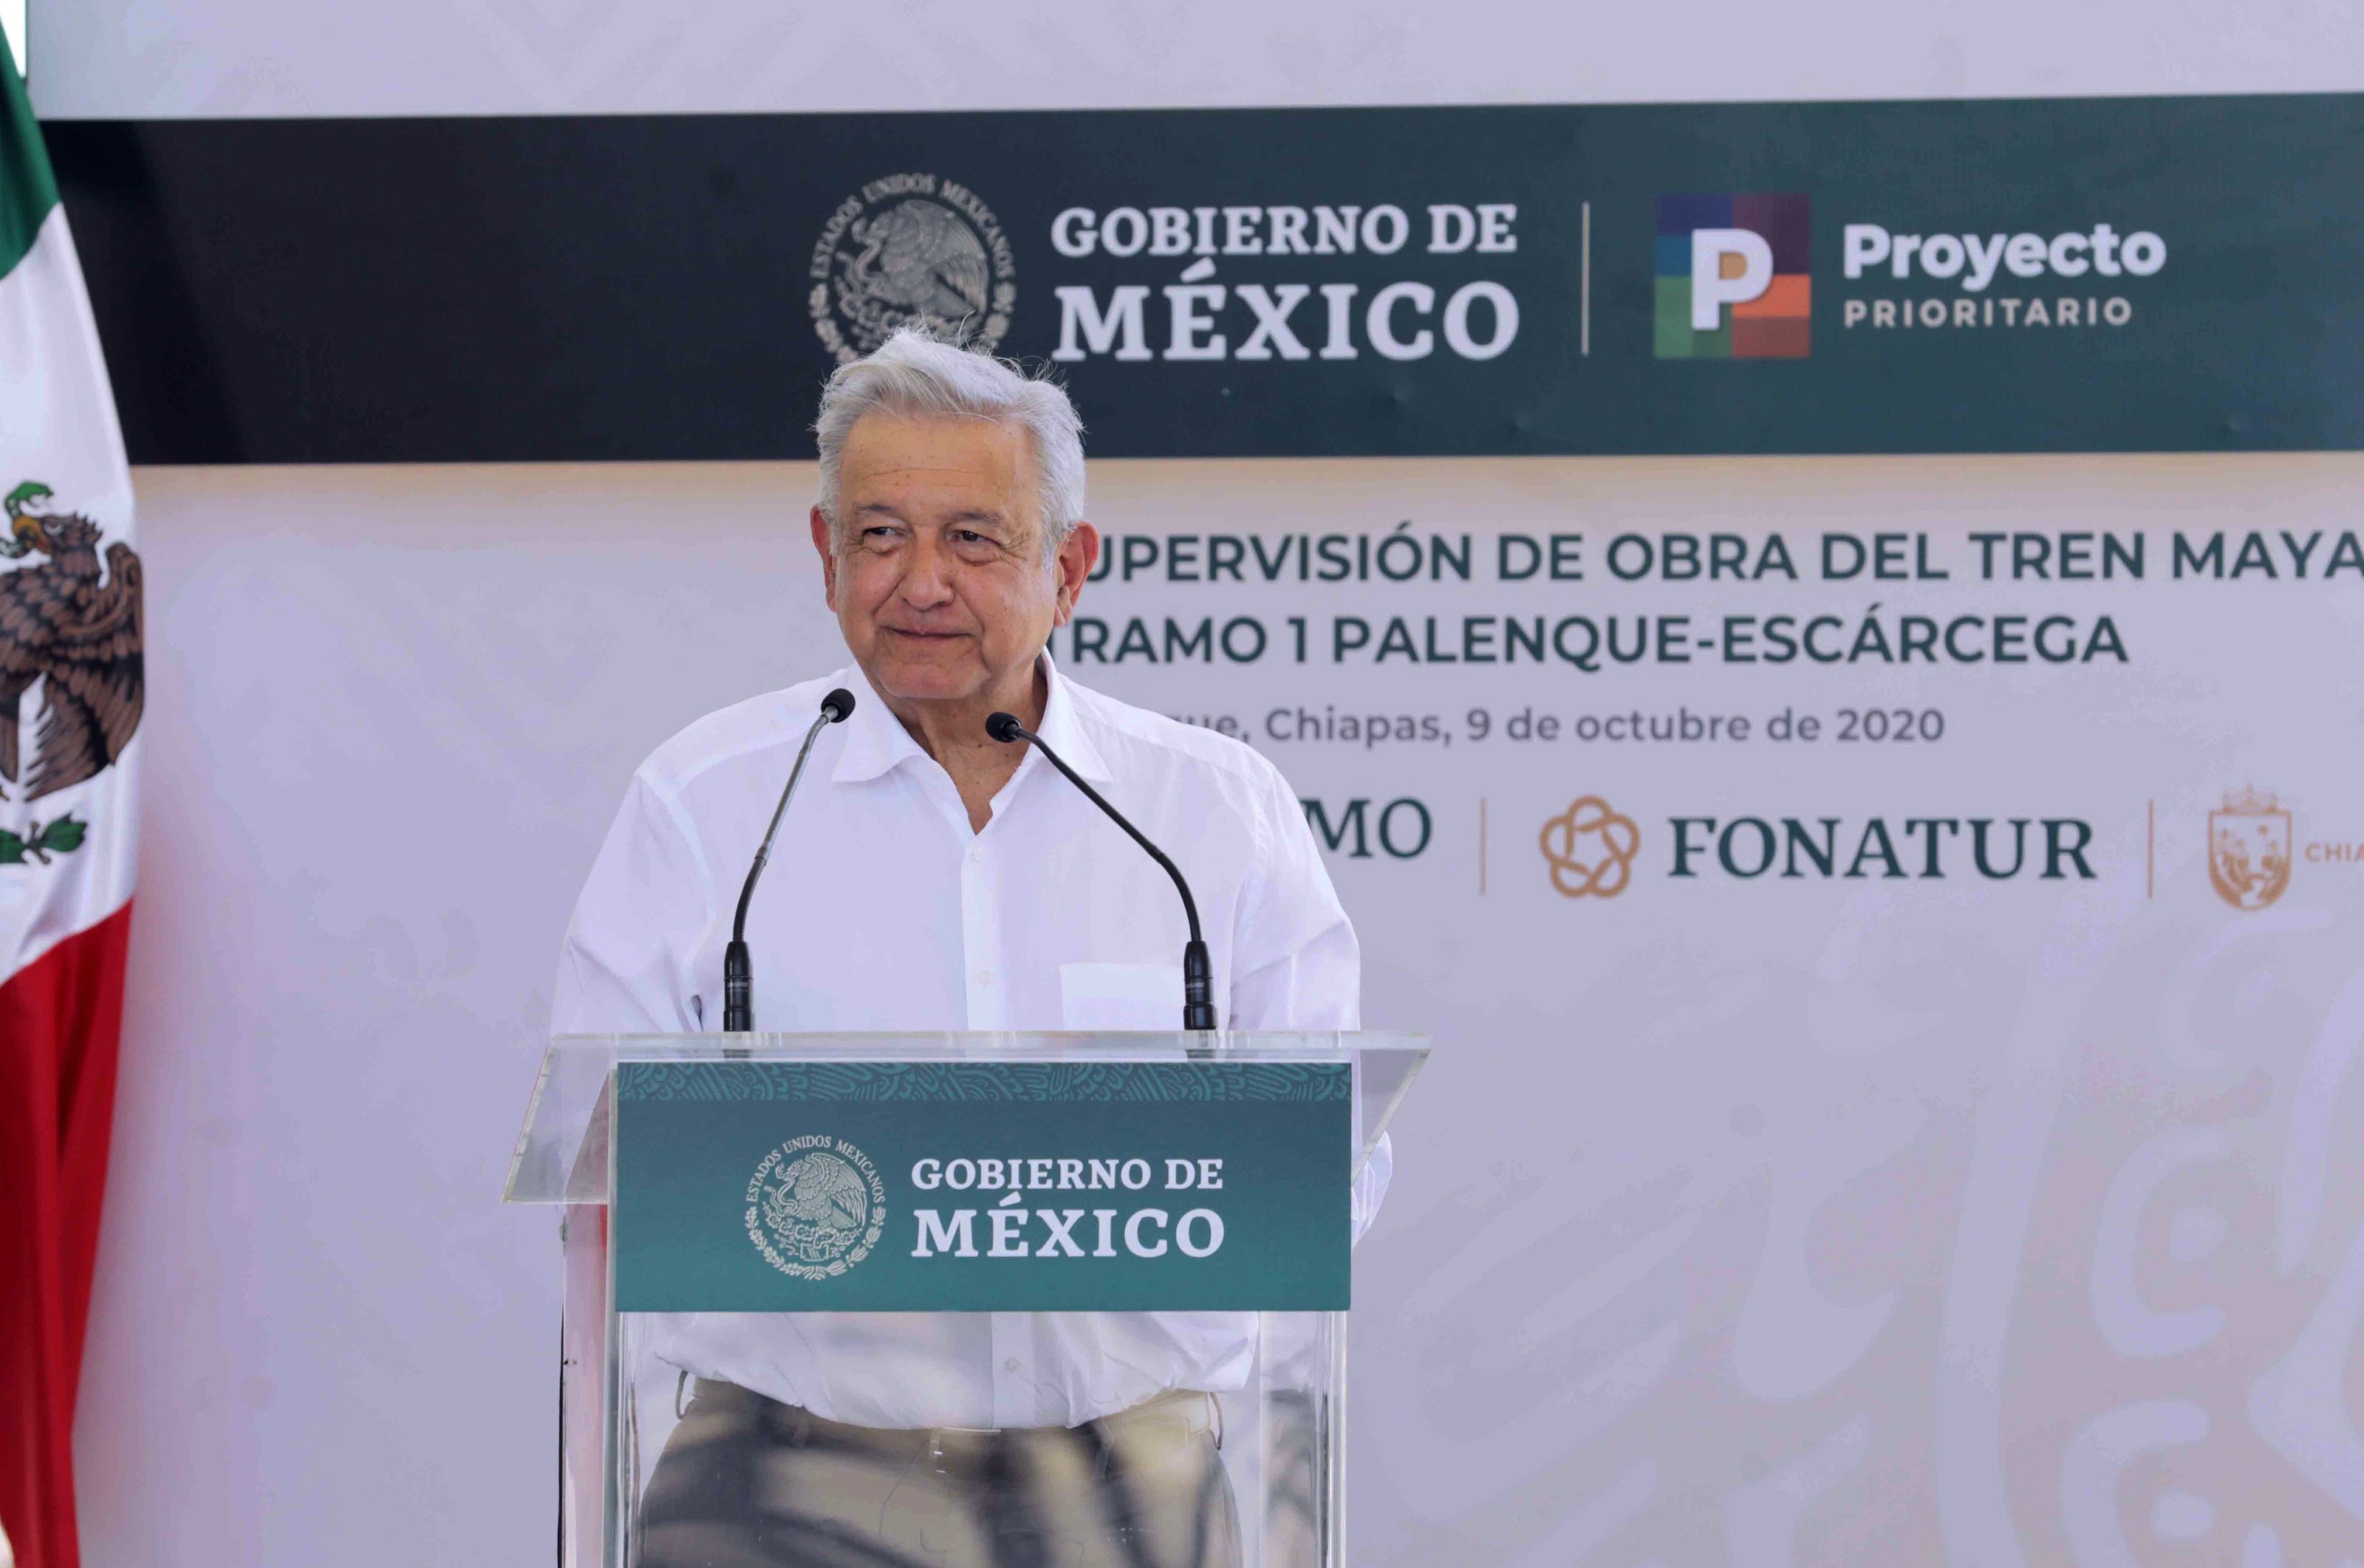 El presidente de México, Andrés Manuel López Obrador, durante la supervisión de obra del Tren Maya en la Ciudad de Palenque estado de Chiapas. (Foto Prensa Libre: EFE)